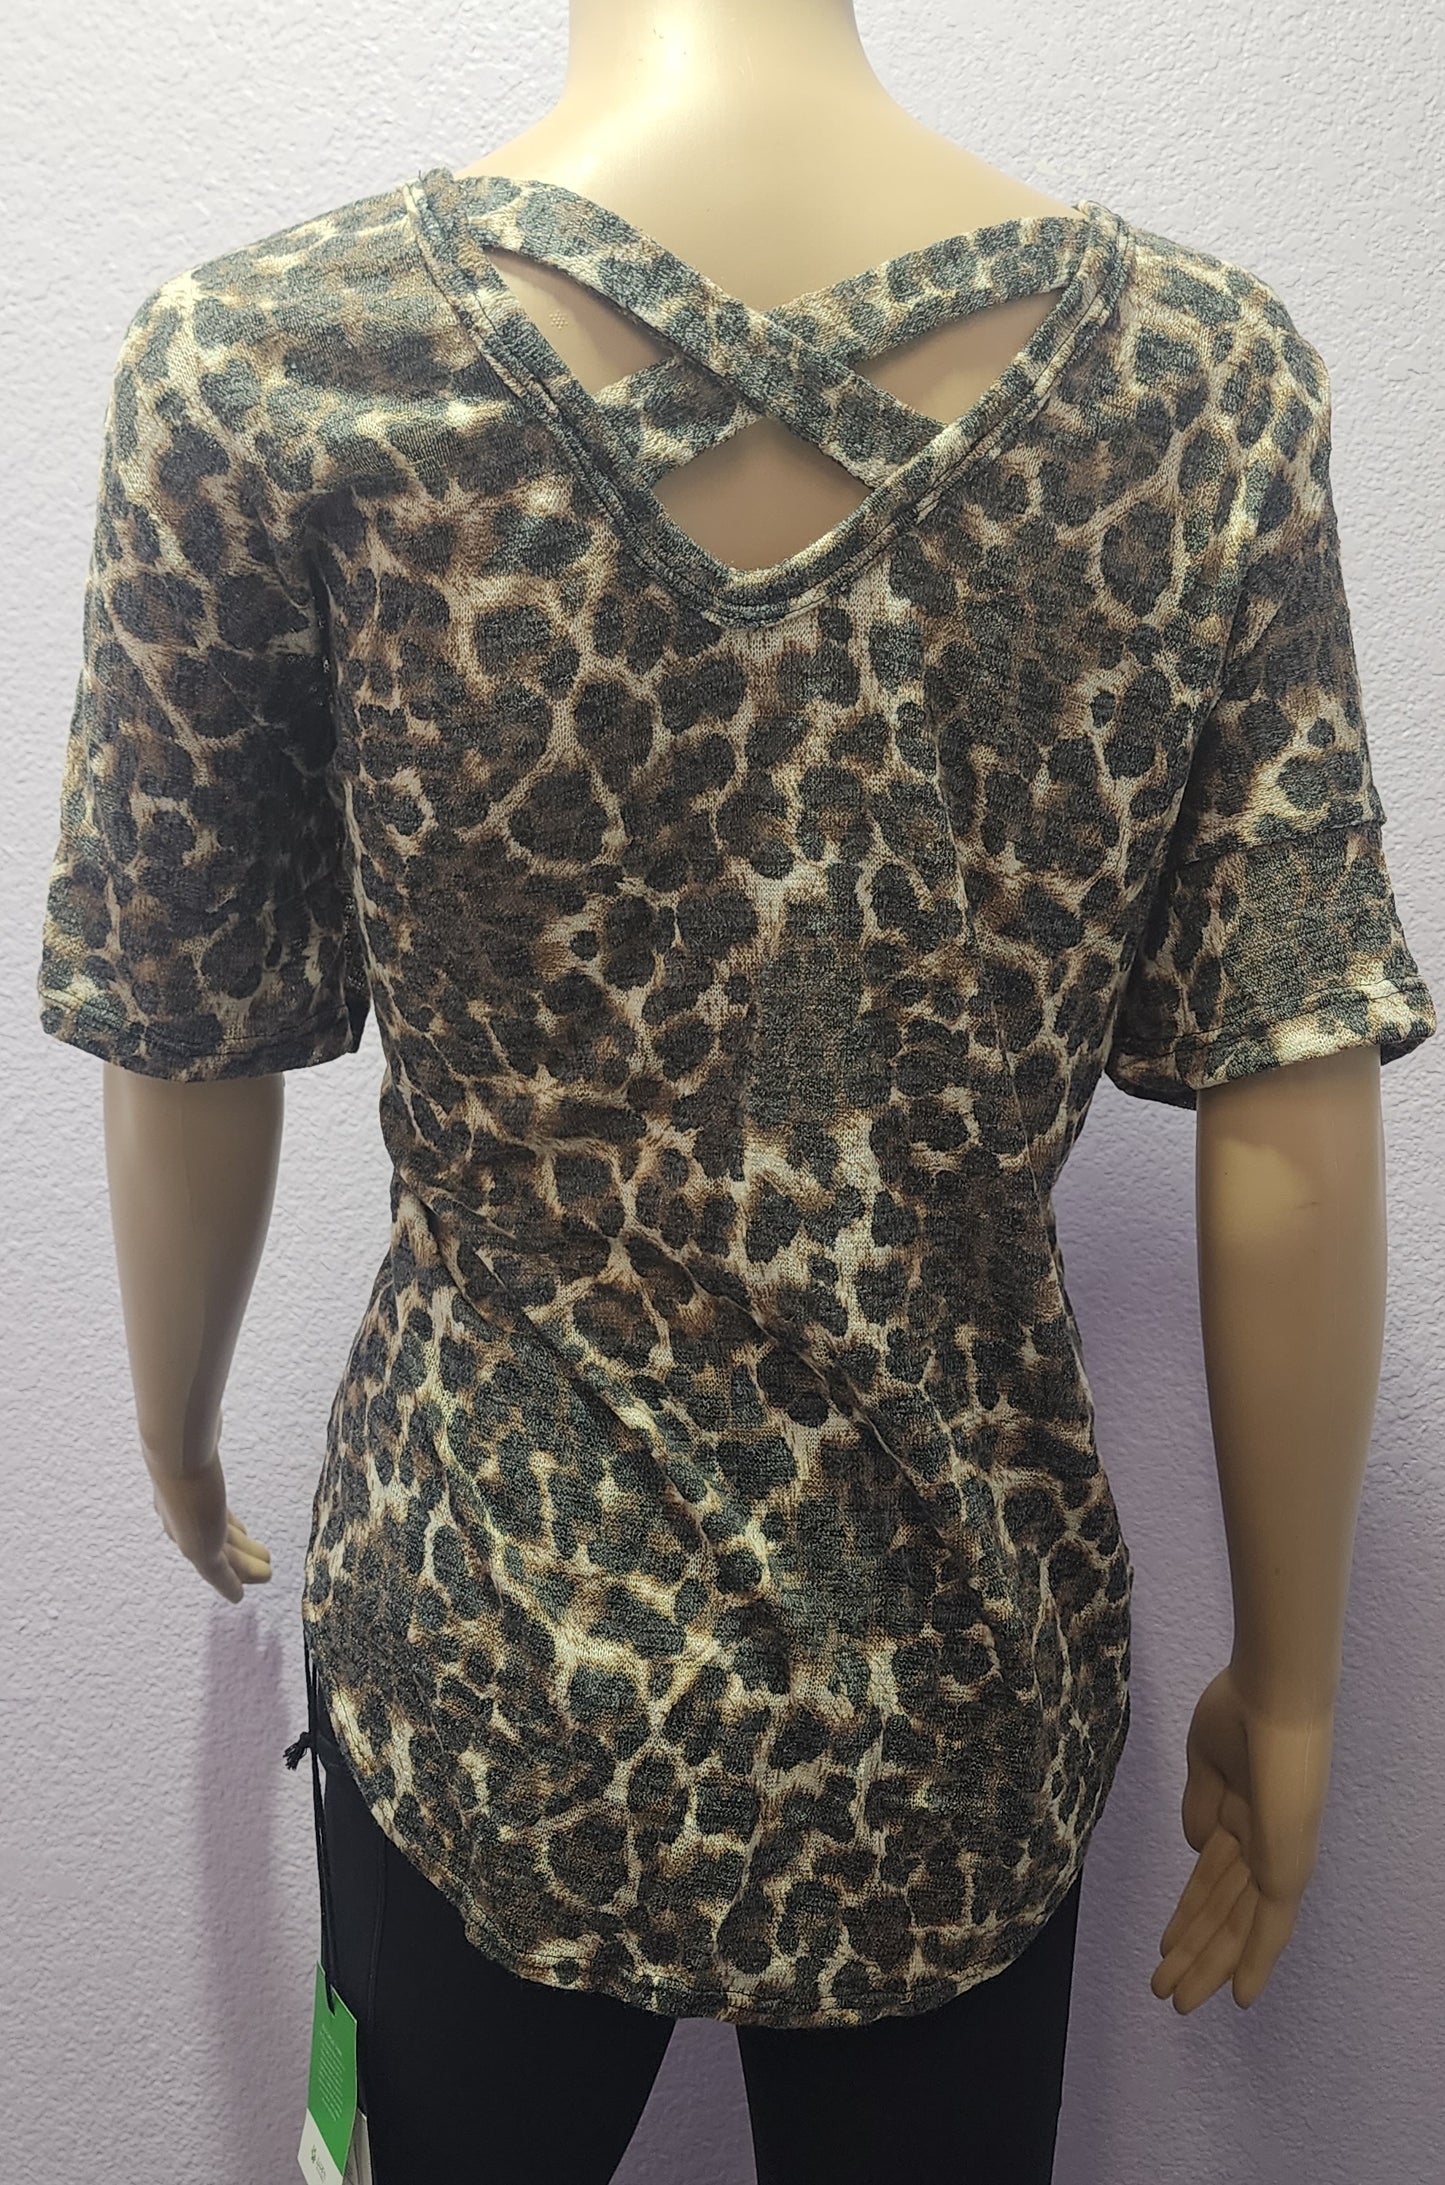 Leopard Print Front Tie Top (Plus Size)